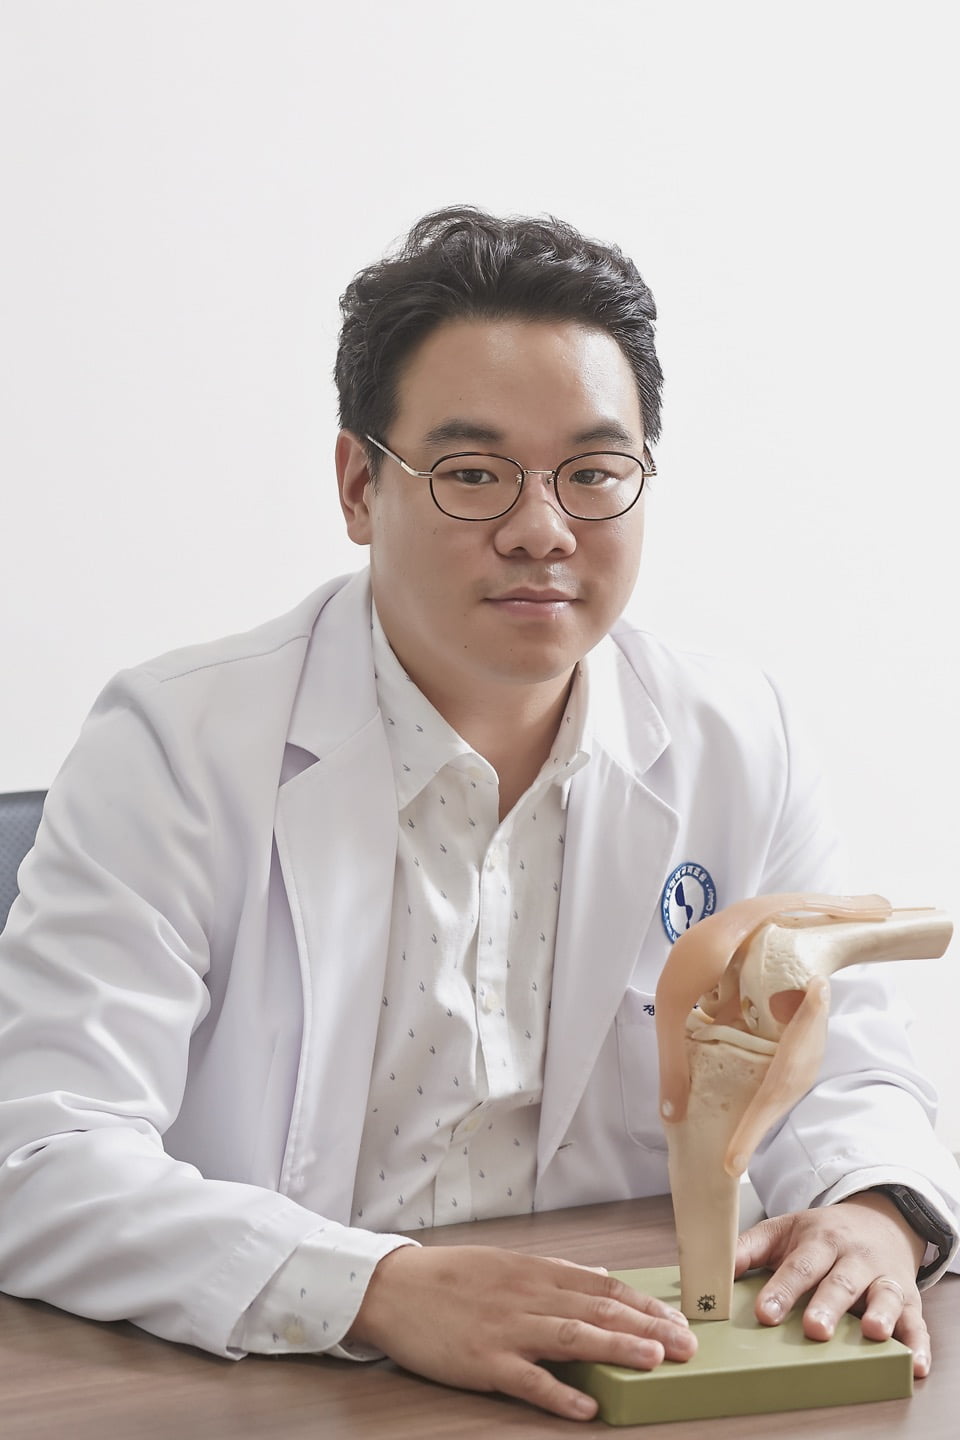 박도영  ㈜아반트릭스 대표는 “앞으로 5년 이내에 의료기기 2개와 세포치료제 1종의 제품 허가 및 출시를 가능토록 하는 것이 ㈜아반트릭스의 목표”라고 말했다. 